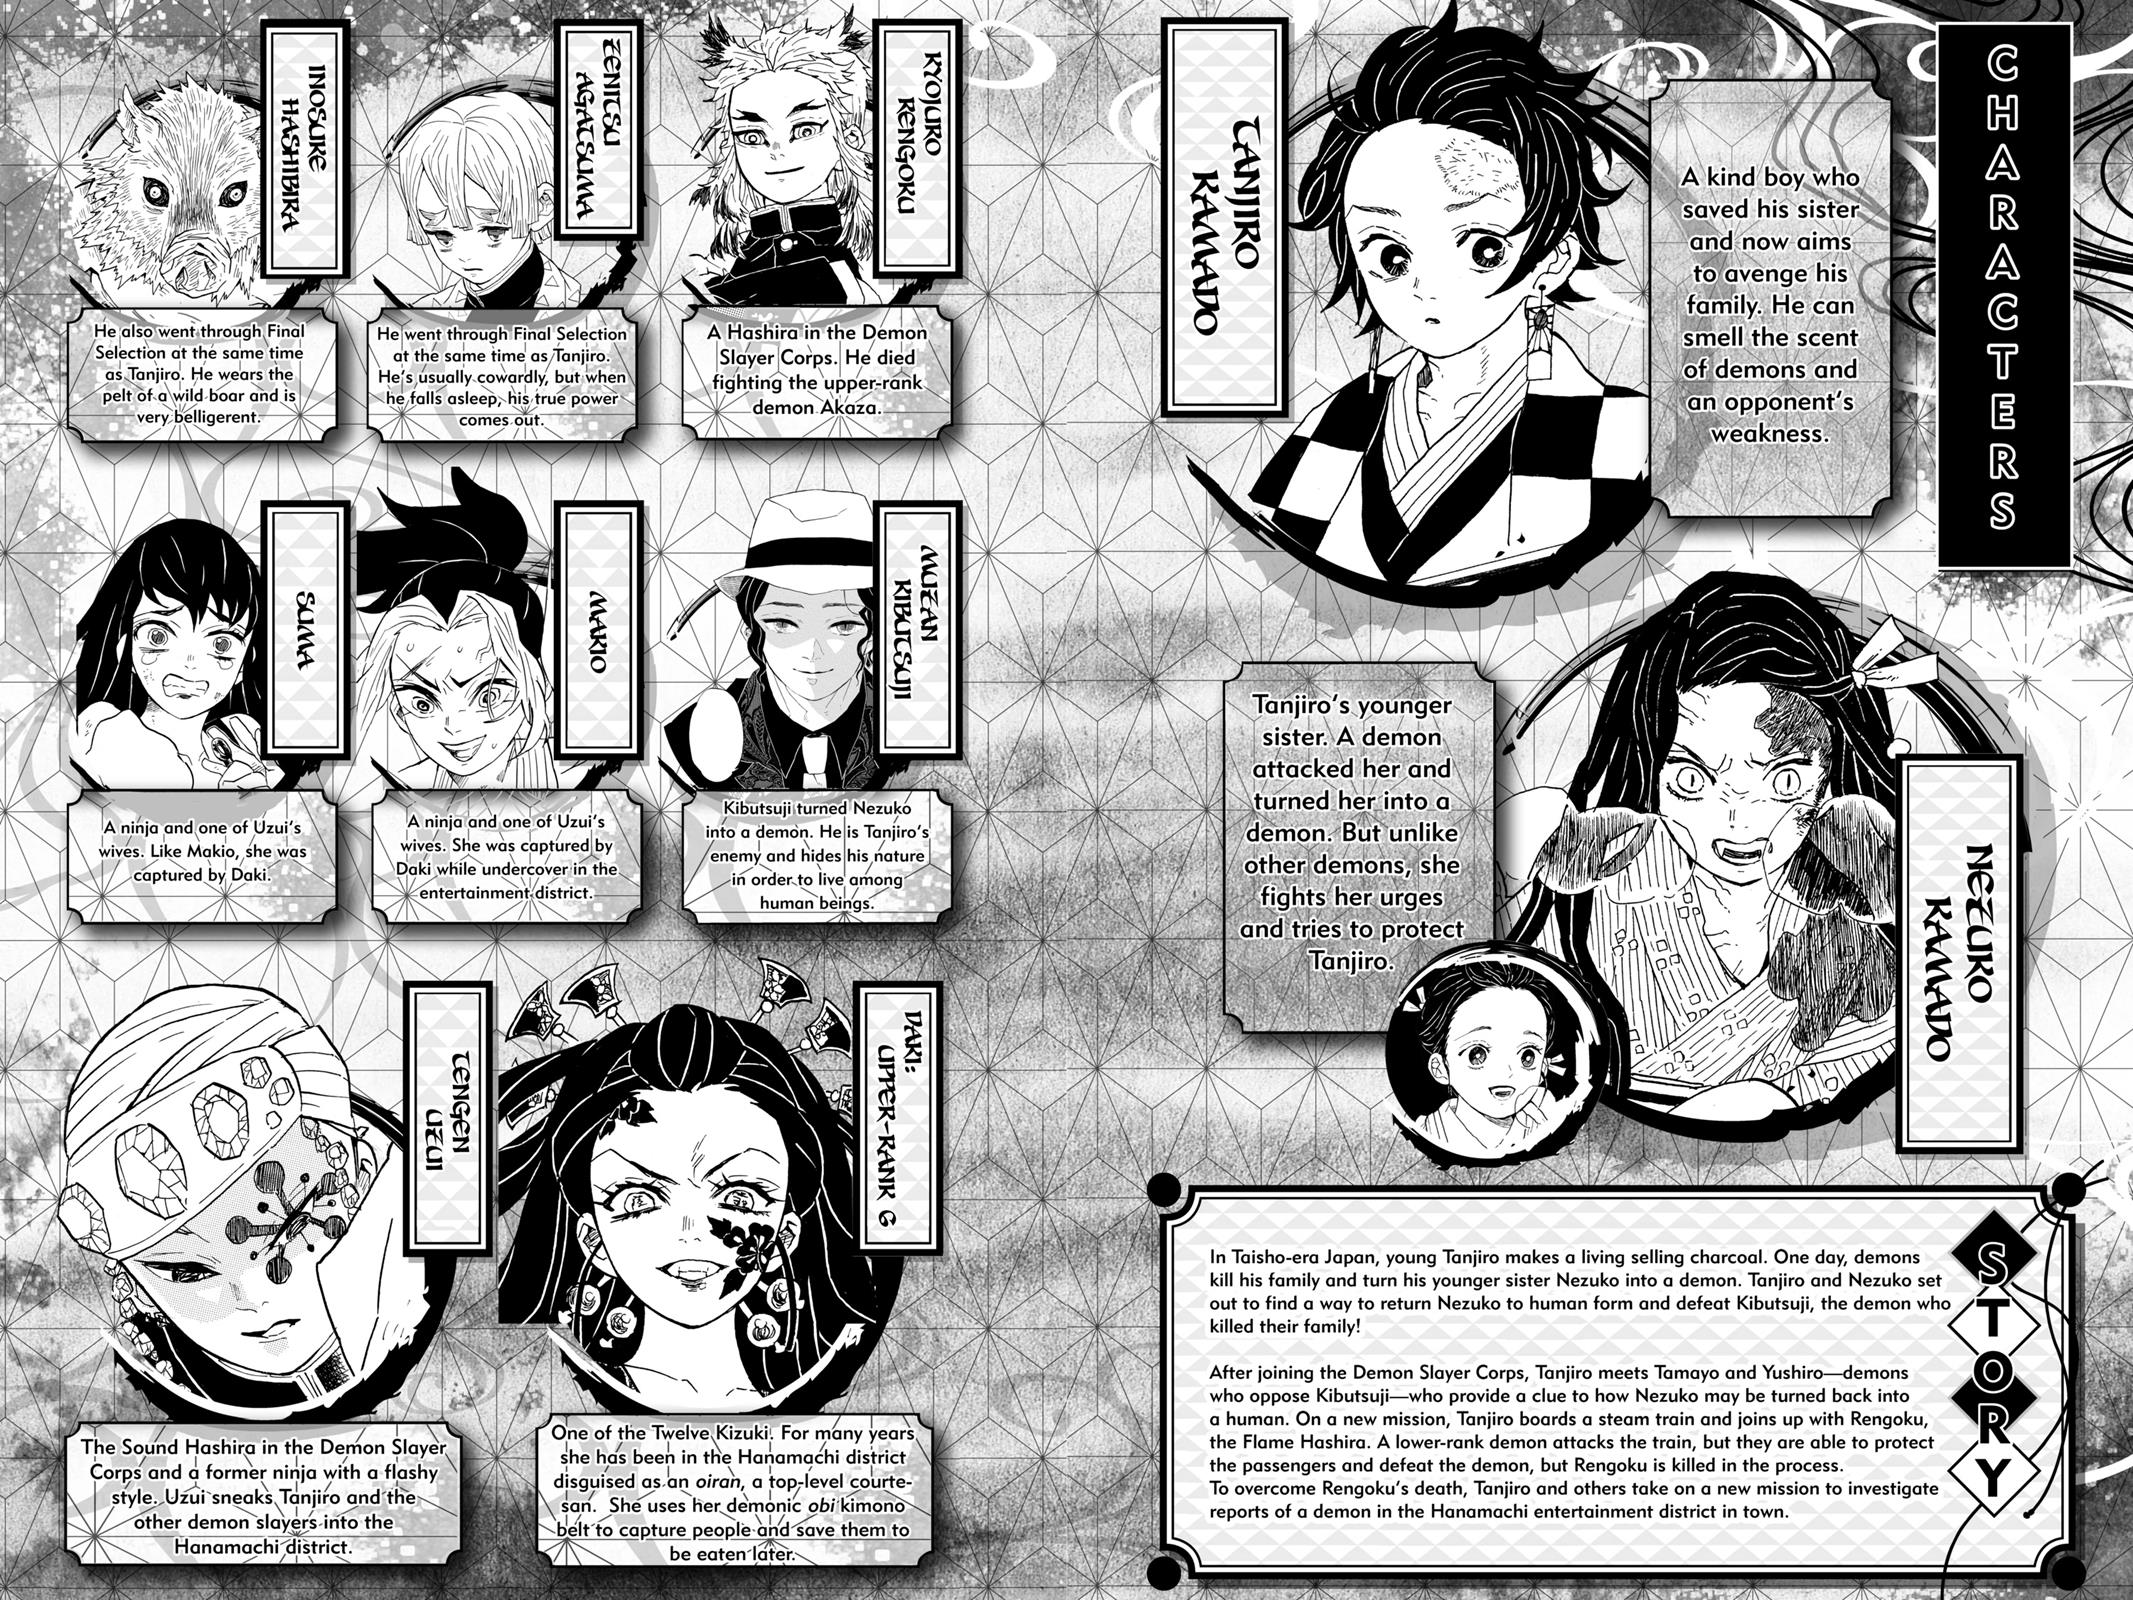 Demon Slayer Manga Manga Chapter - 80 - image 5